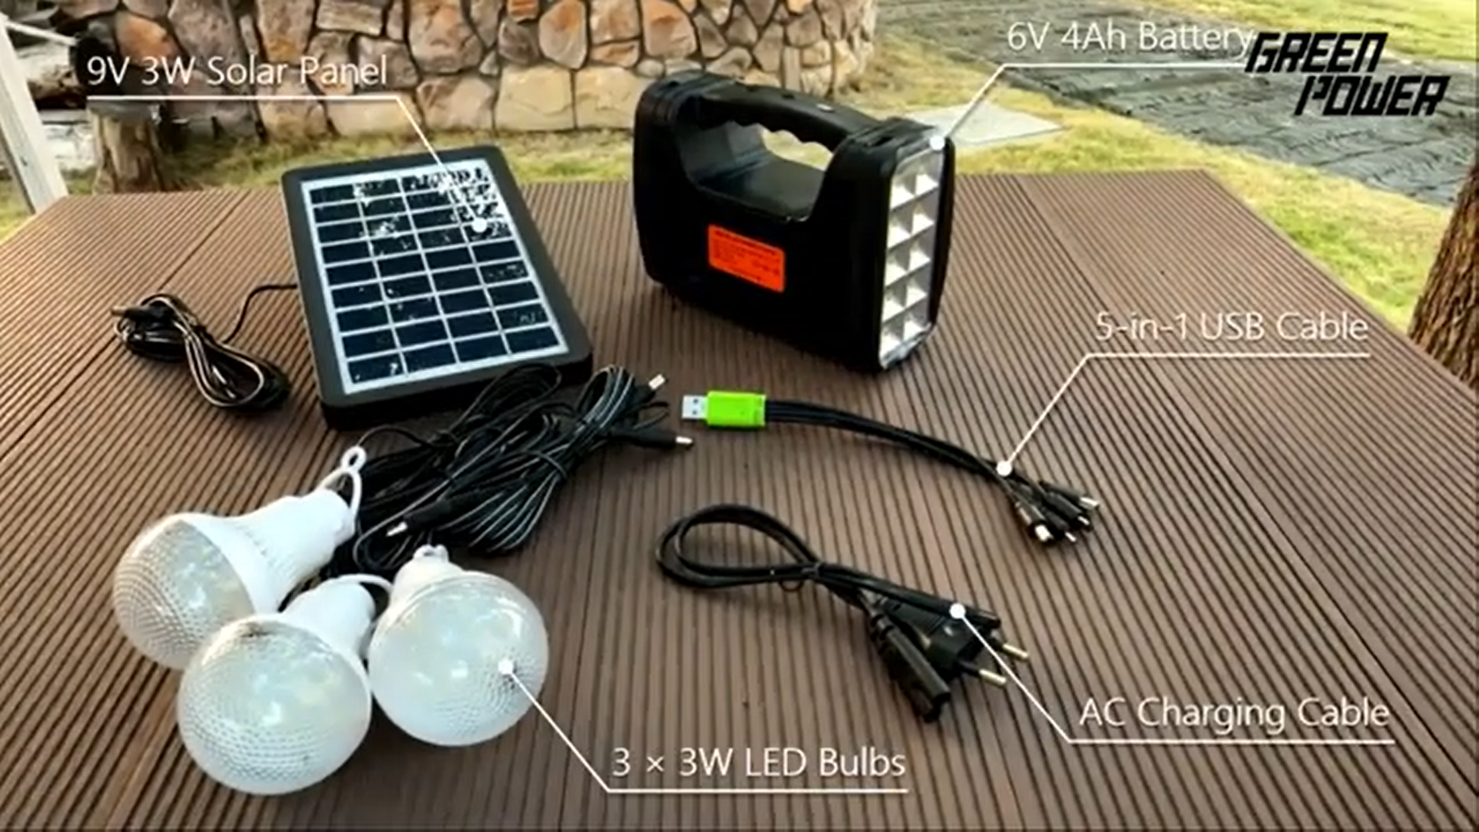 GP 351 Mini-Solarbeleuchtungssets – eine einfache und schnelle Lösung zur Beleuchtung von Häusern ohne Strom